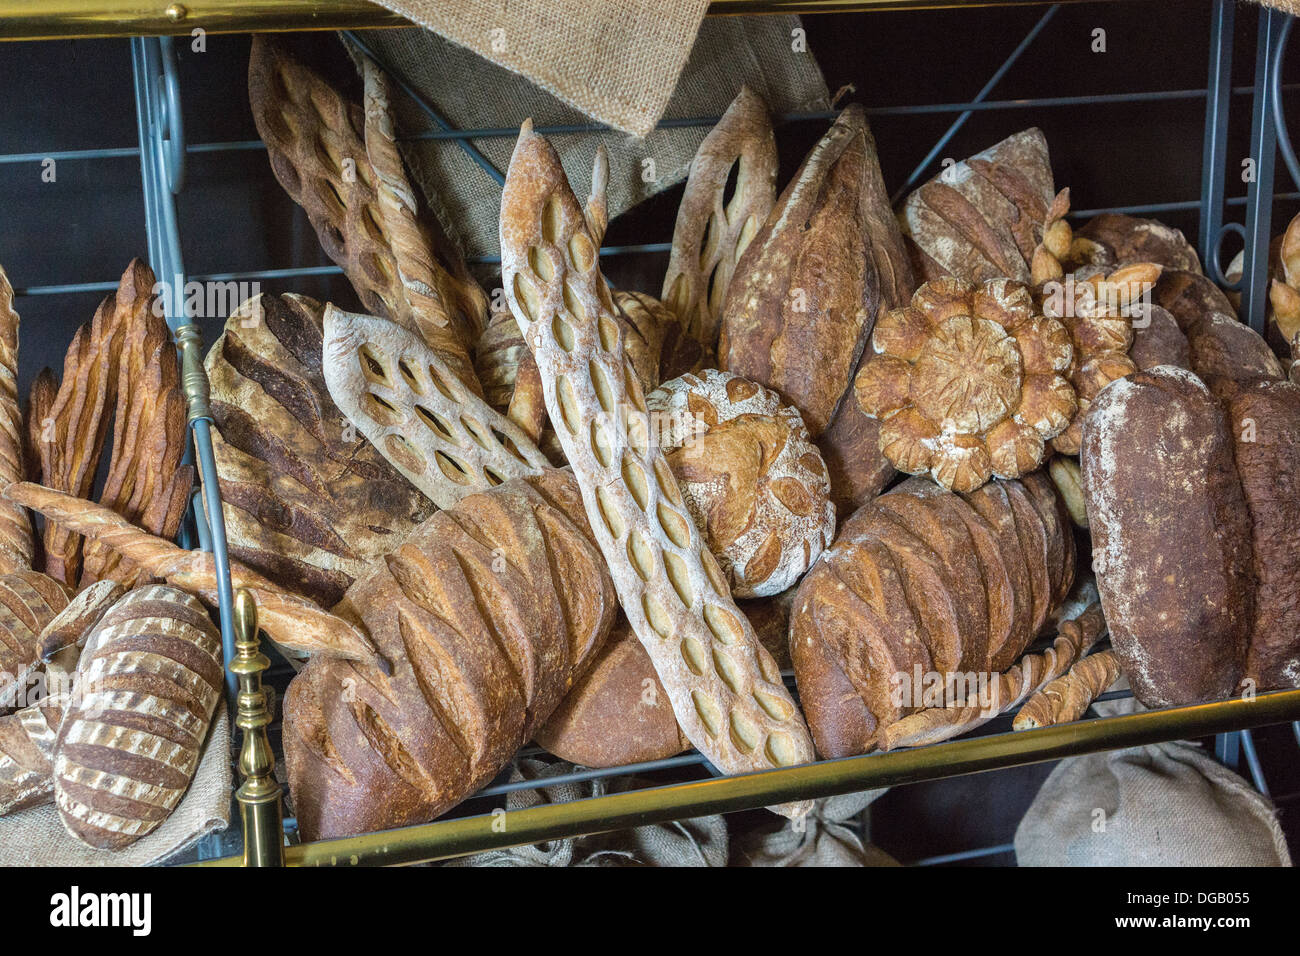 bread basket region